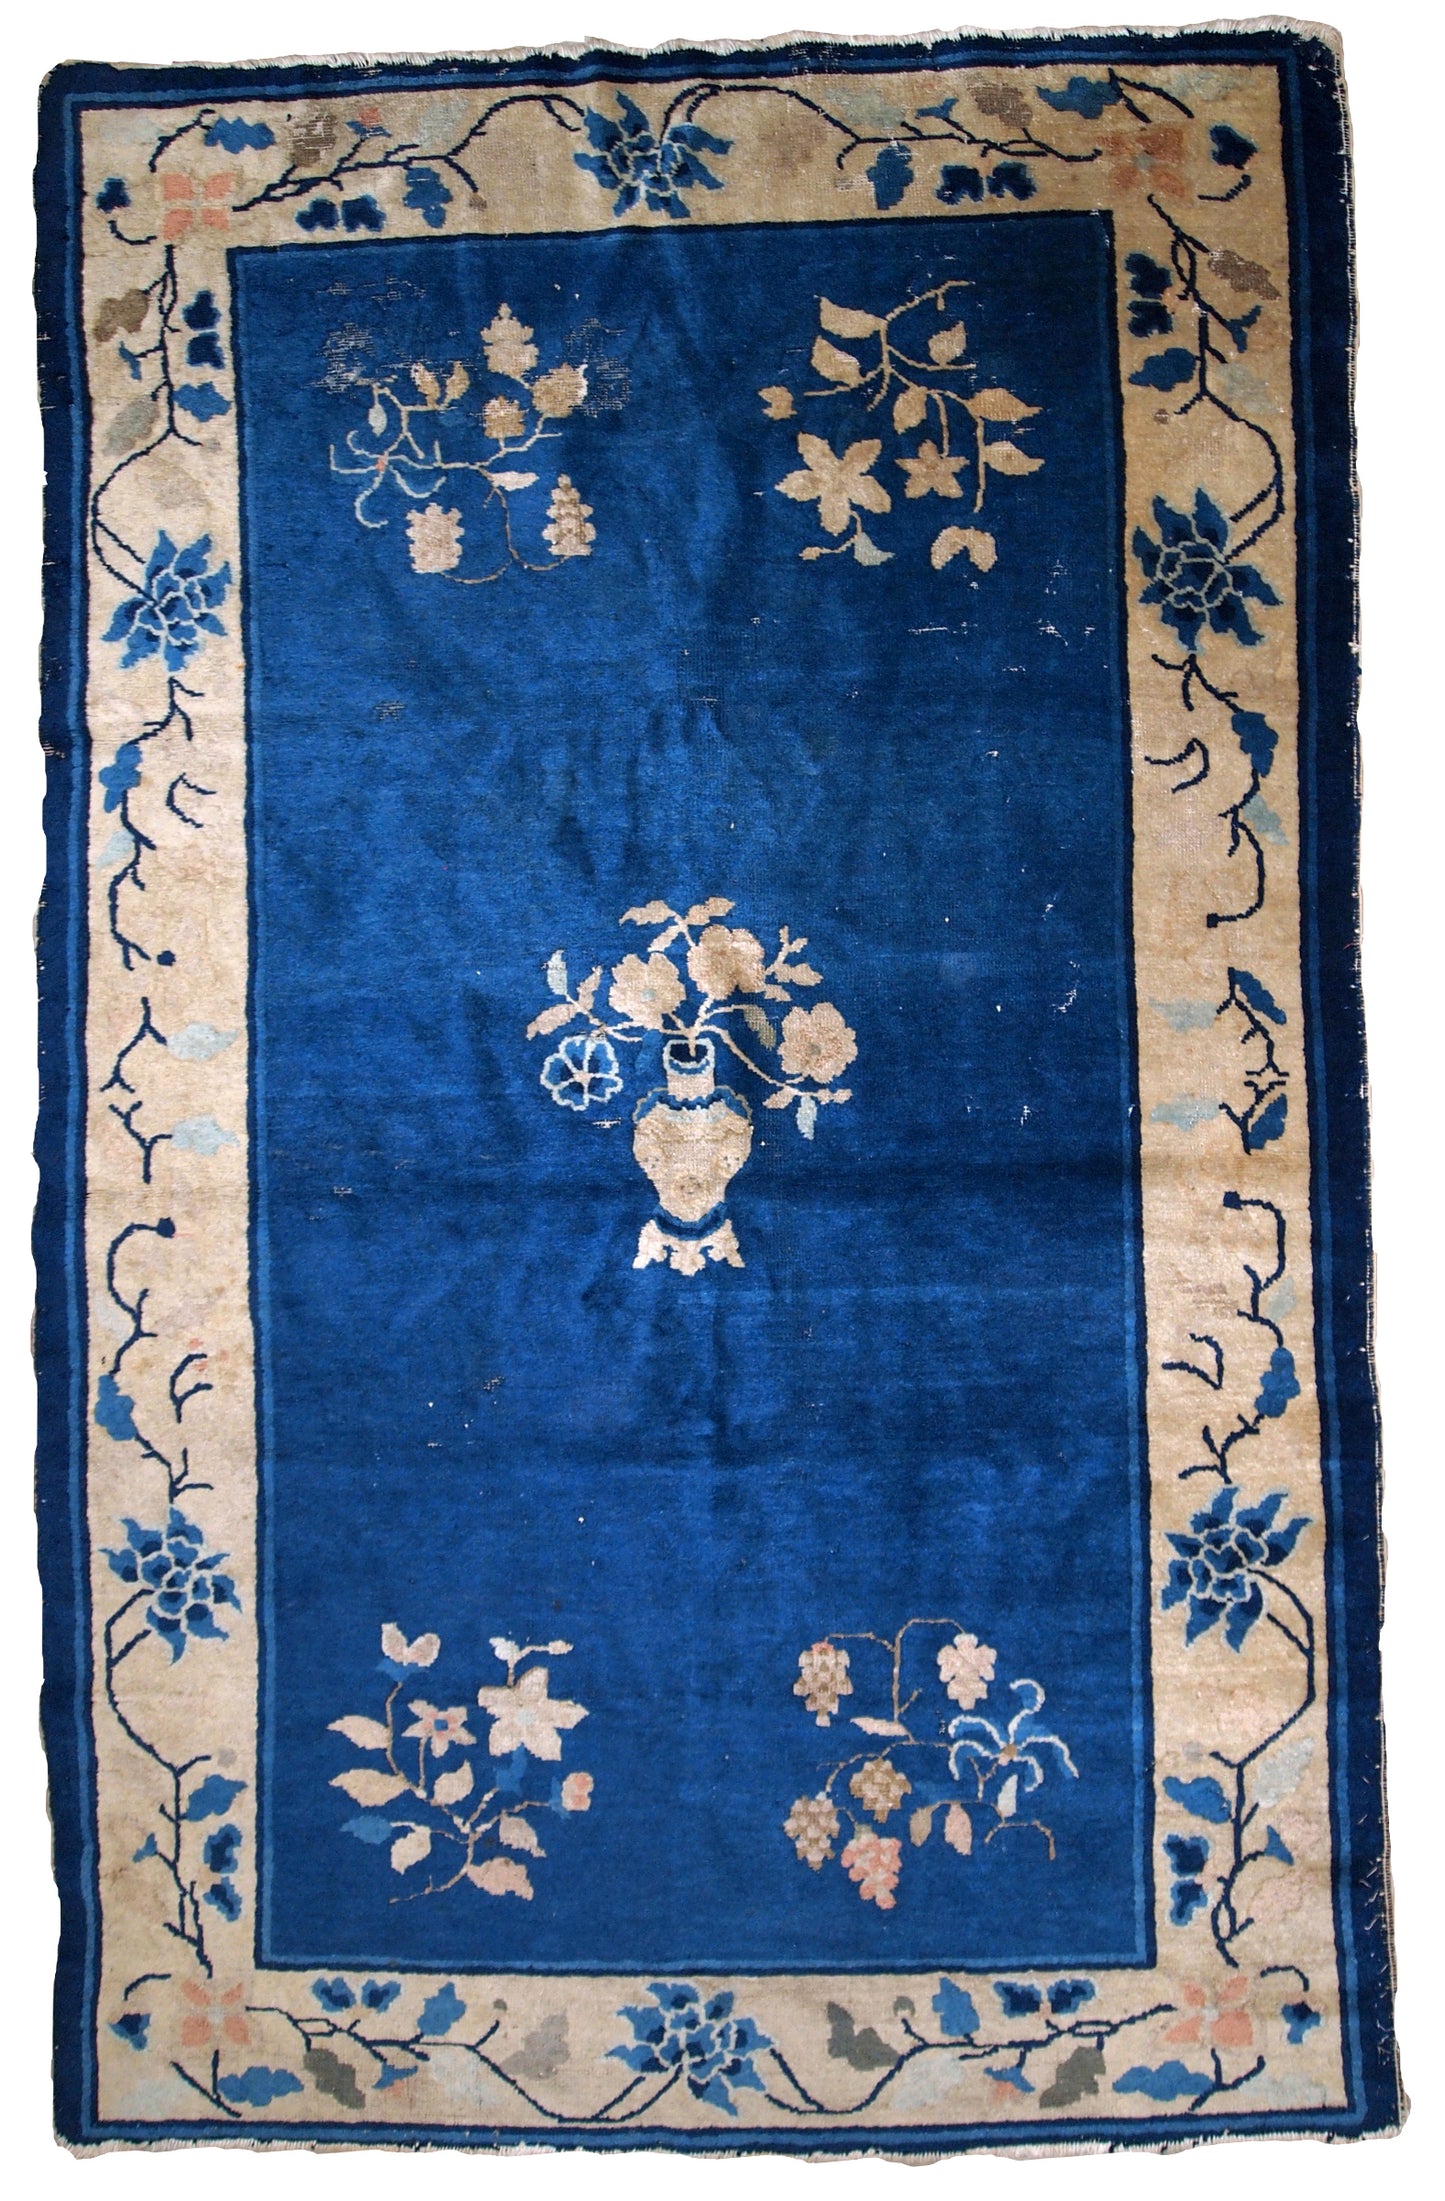 Handmade antique Peking Chinese rug 1900s